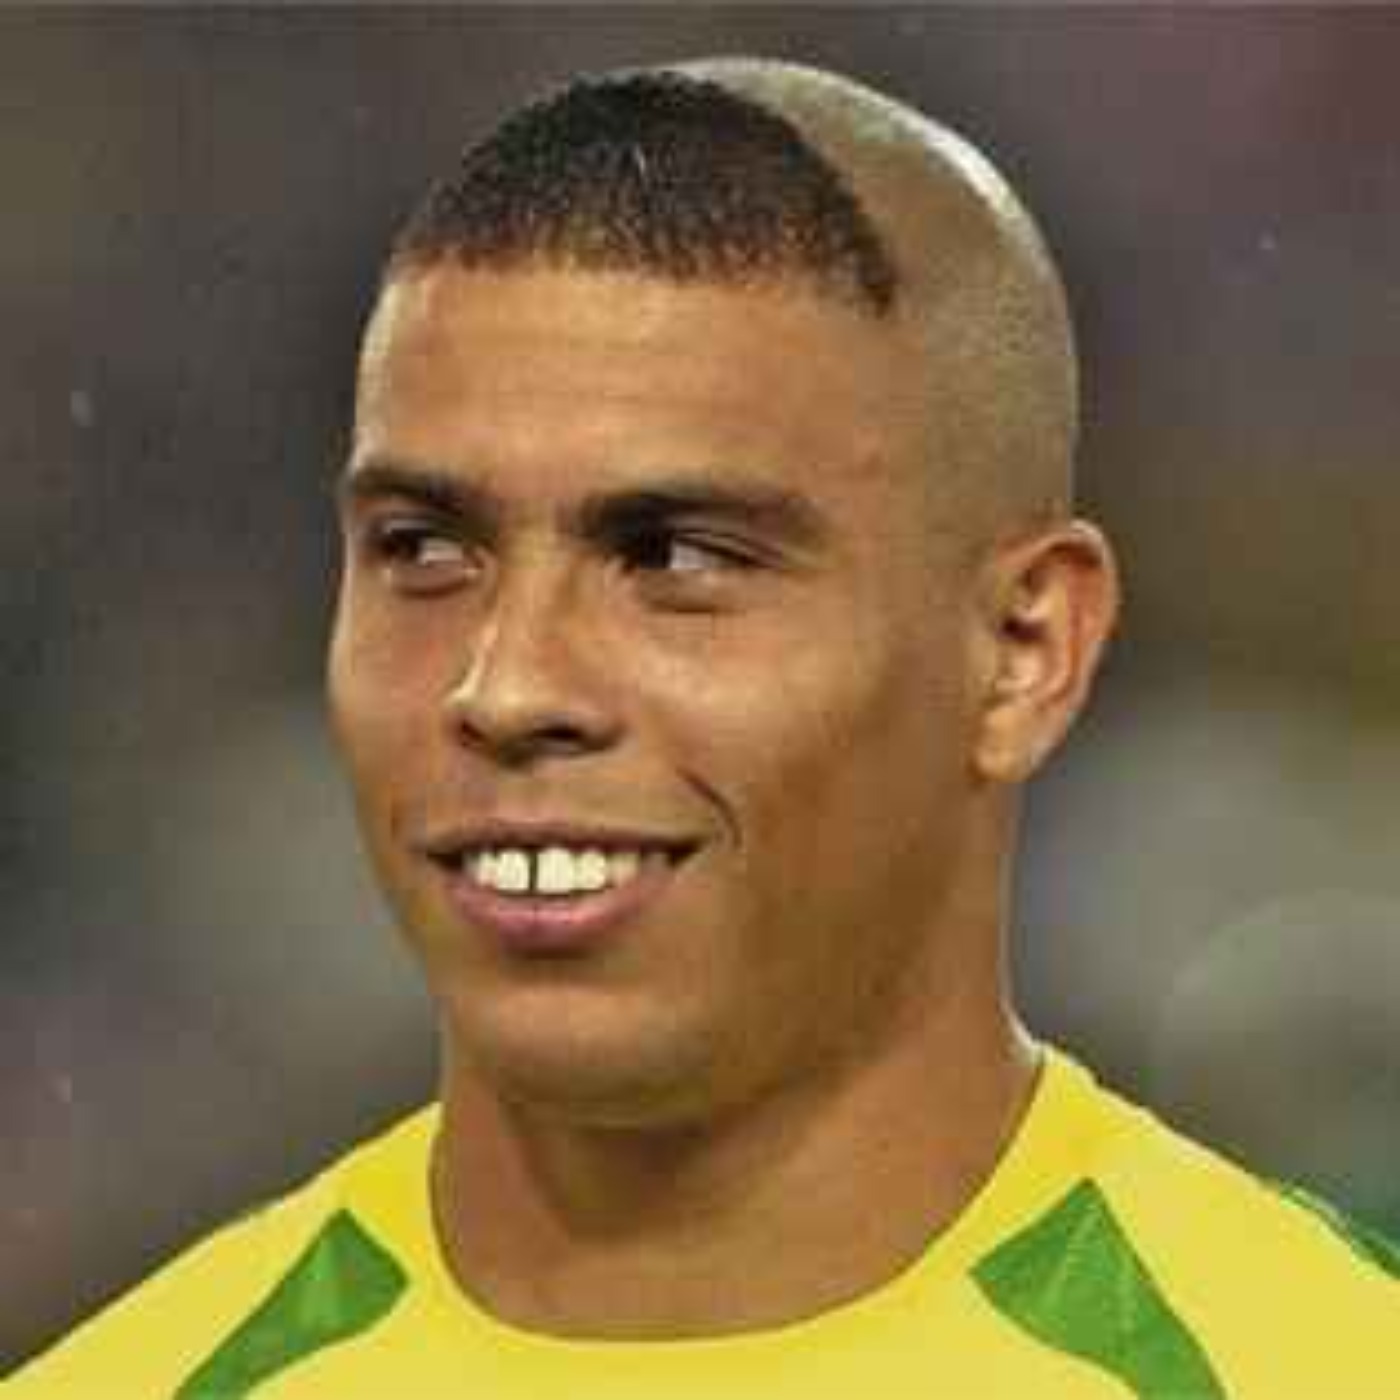 Pourquoi Ronaldo a fait cette coupe de cheveux en 2002 ?